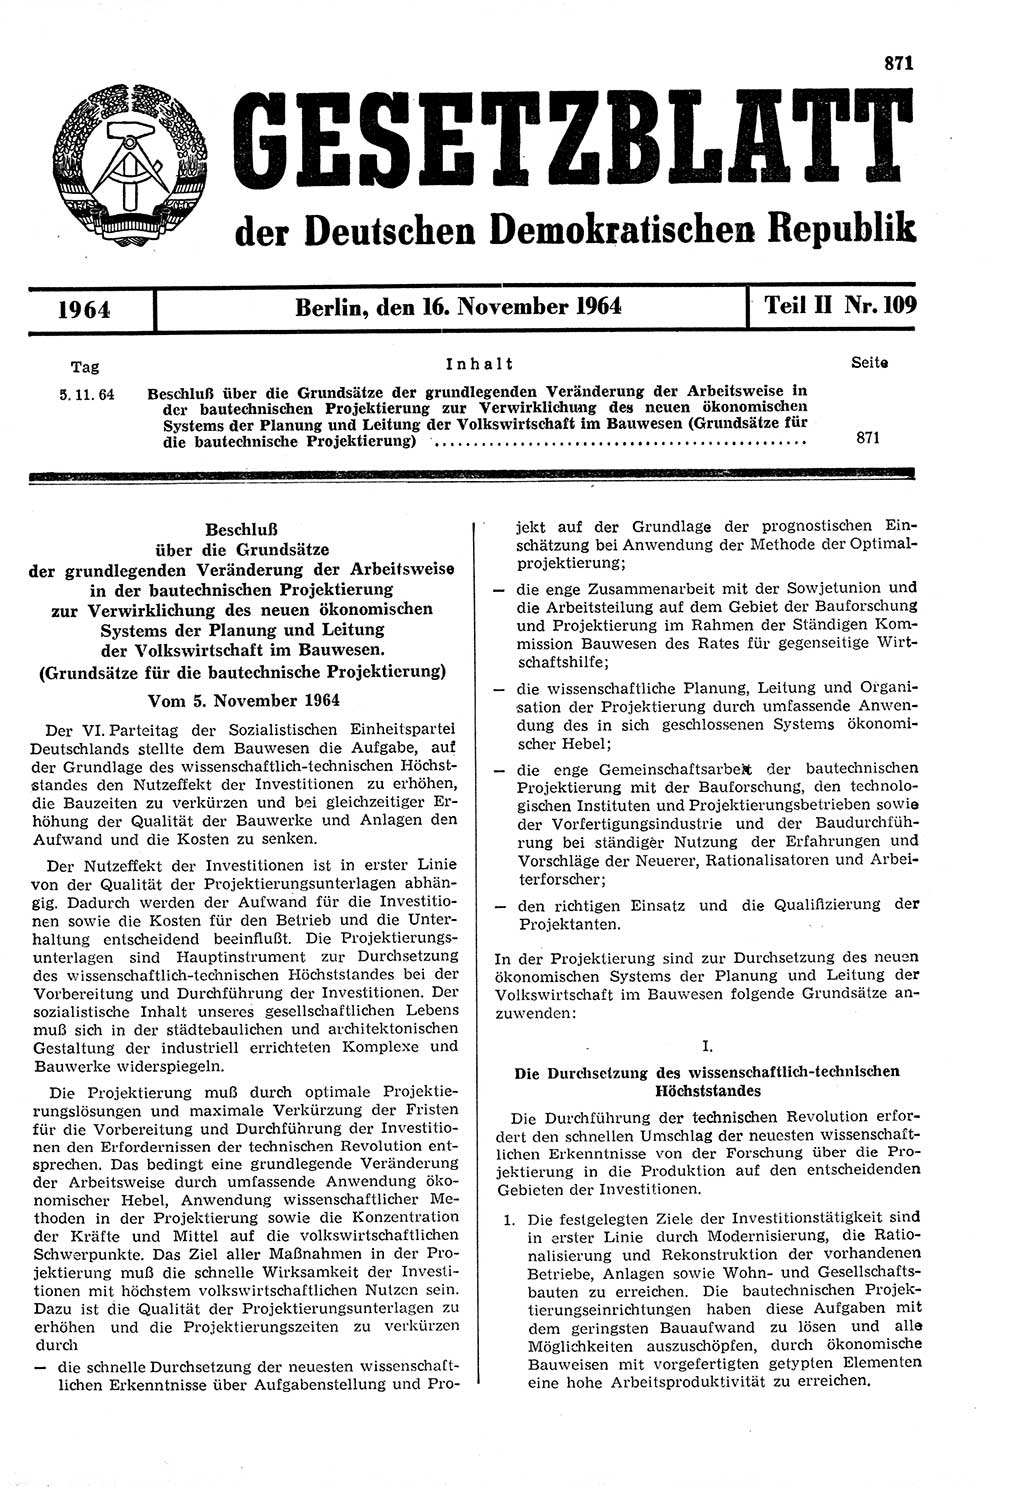 Gesetzblatt (GBl.) der Deutschen Demokratischen Republik (DDR) Teil ⅠⅠ 1964, Seite 871 (GBl. DDR ⅠⅠ 1964, S. 871)